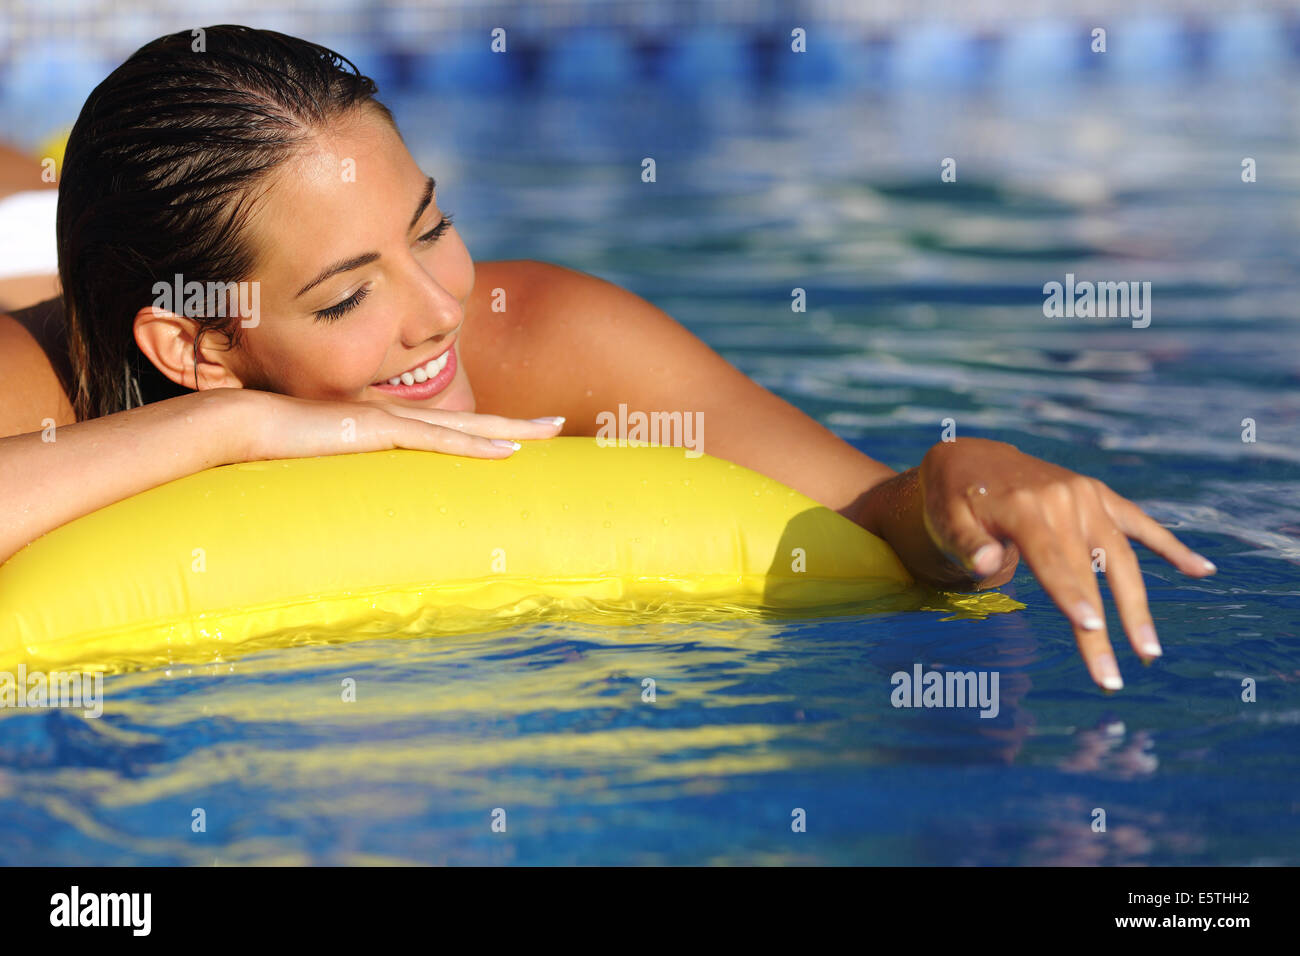 Frau Baden und spielen auf einer Matratze mit Wasser auf einen Swimming Pool  im Urlaub Stockfotografie - Alamy